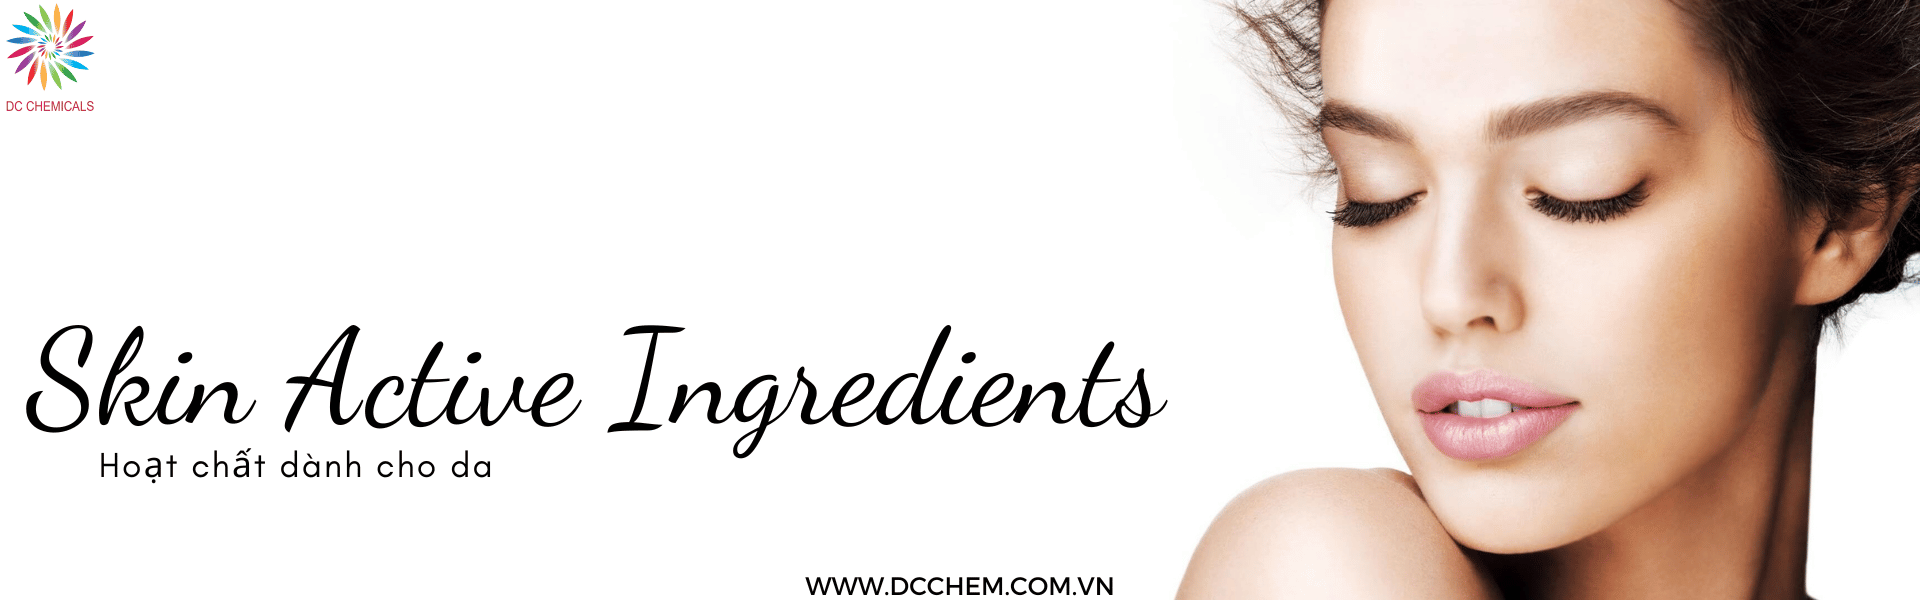 Hoạt chất dành cho da - Skin active Ingredients